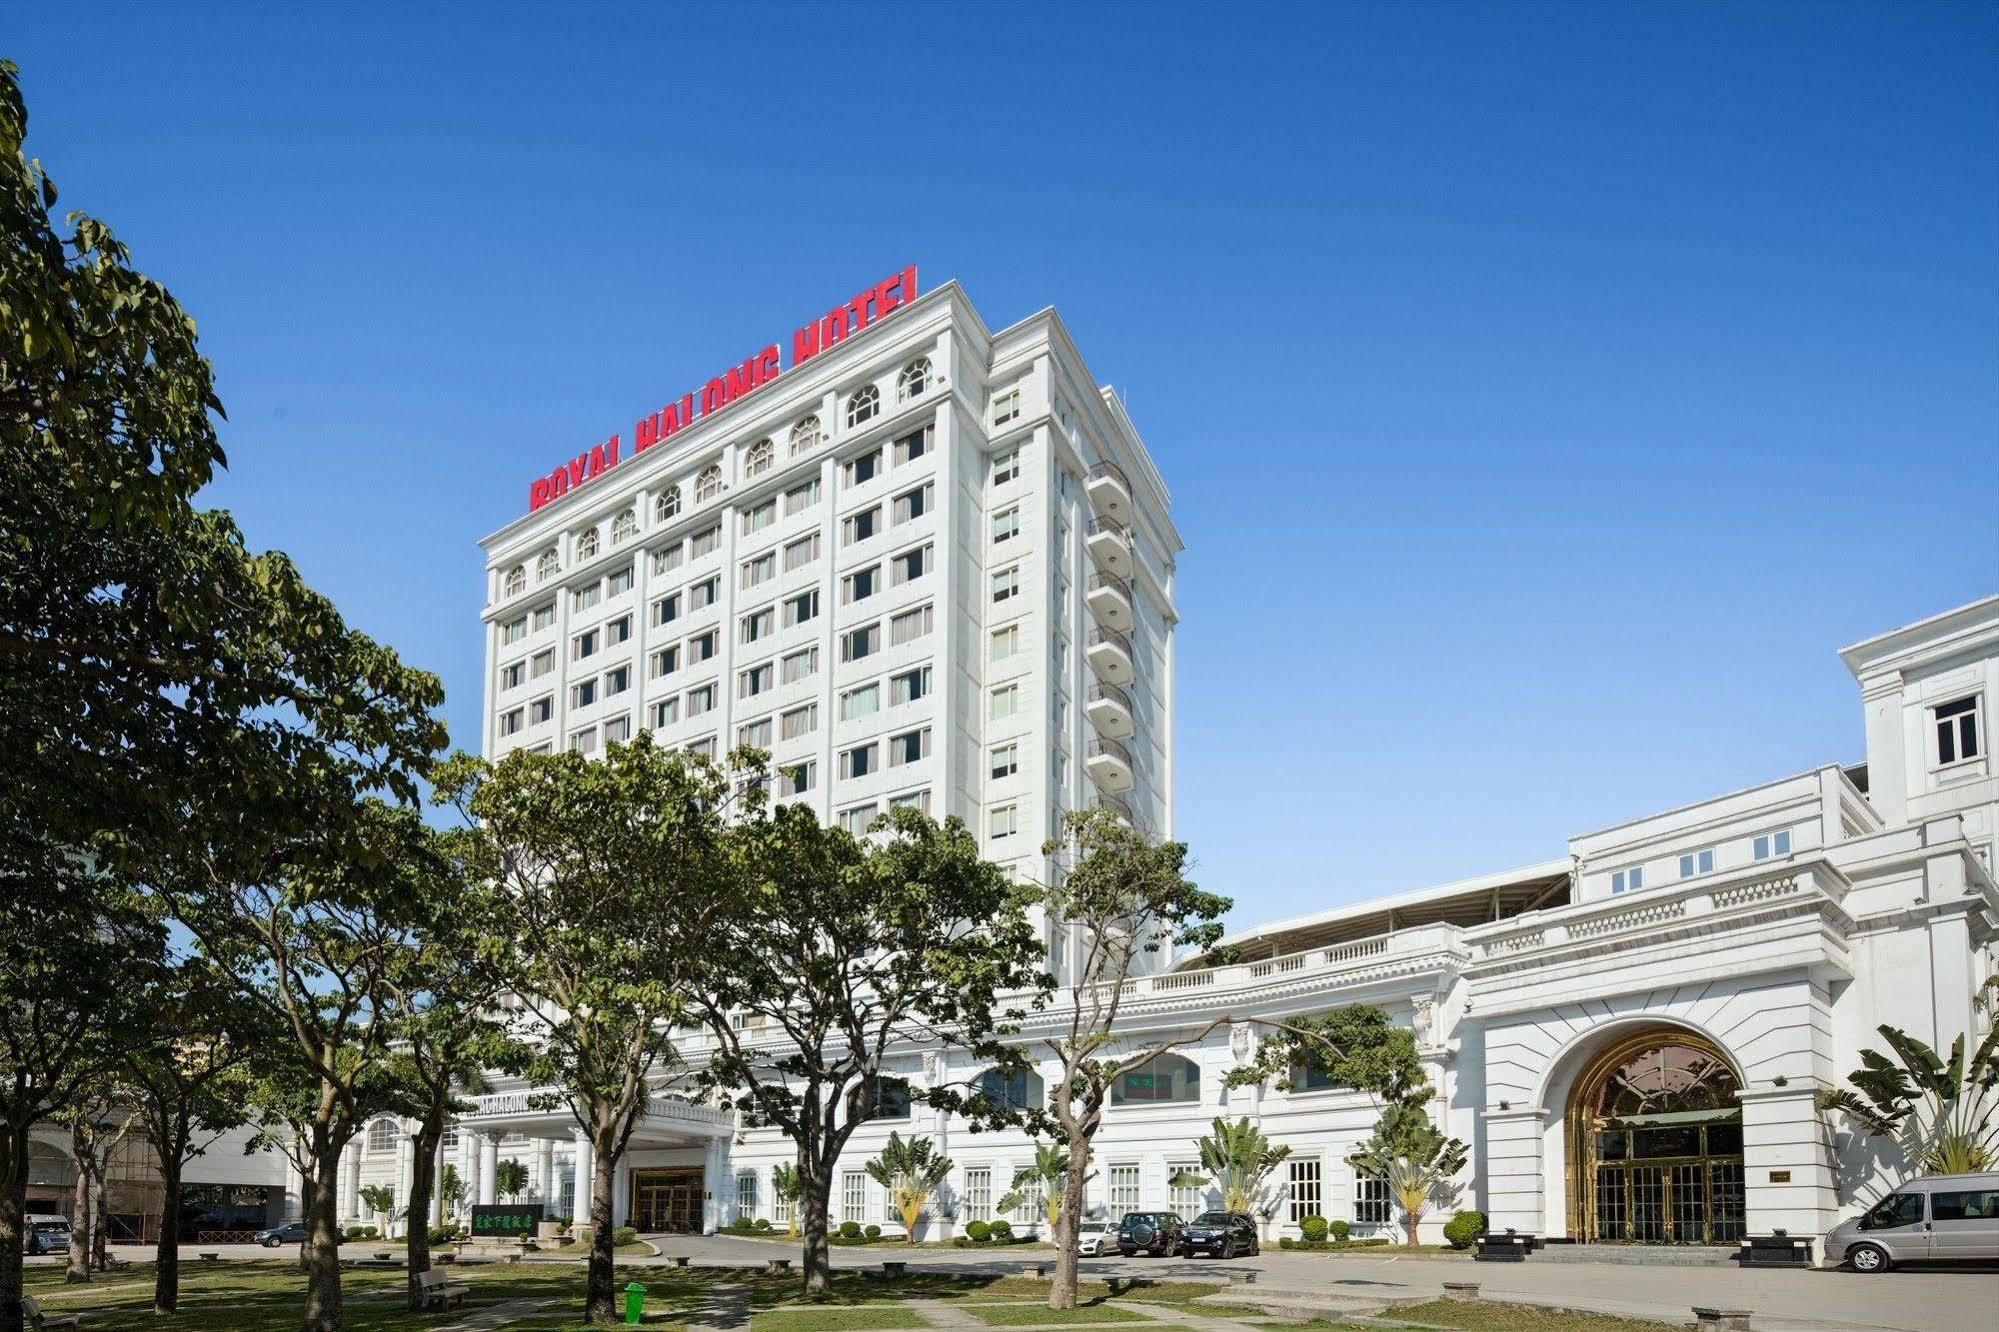 Khách sạn Hạ Long - Hãy khám phá vẻ đẹp tuyệt vời của vịnh Hạ Long tại khách sạn của chúng tôi. Khách sạn Hạ Long sẽ mang đến cho bạn một trải nghiệm nghỉ dưỡng tuyệt vời với các tiện nghi hiện đại và dịch vụ chăm sóc chu đáo.